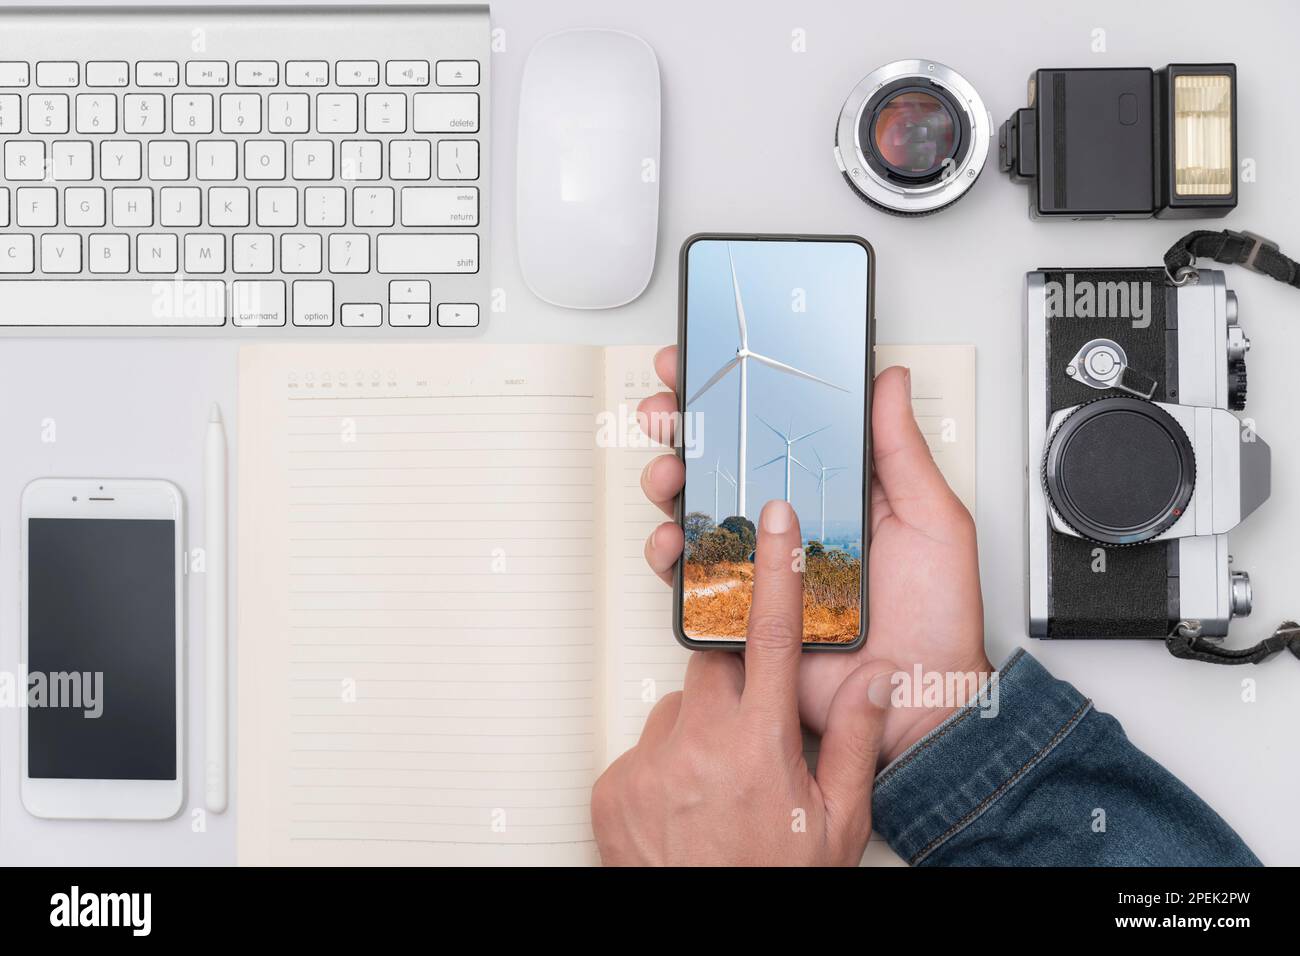 Die Hand eines Mannes hält ein Telefon auf einem Schreibtisch voller Geräte, Kameras, Telefone und Computertastaturen. Stockfoto